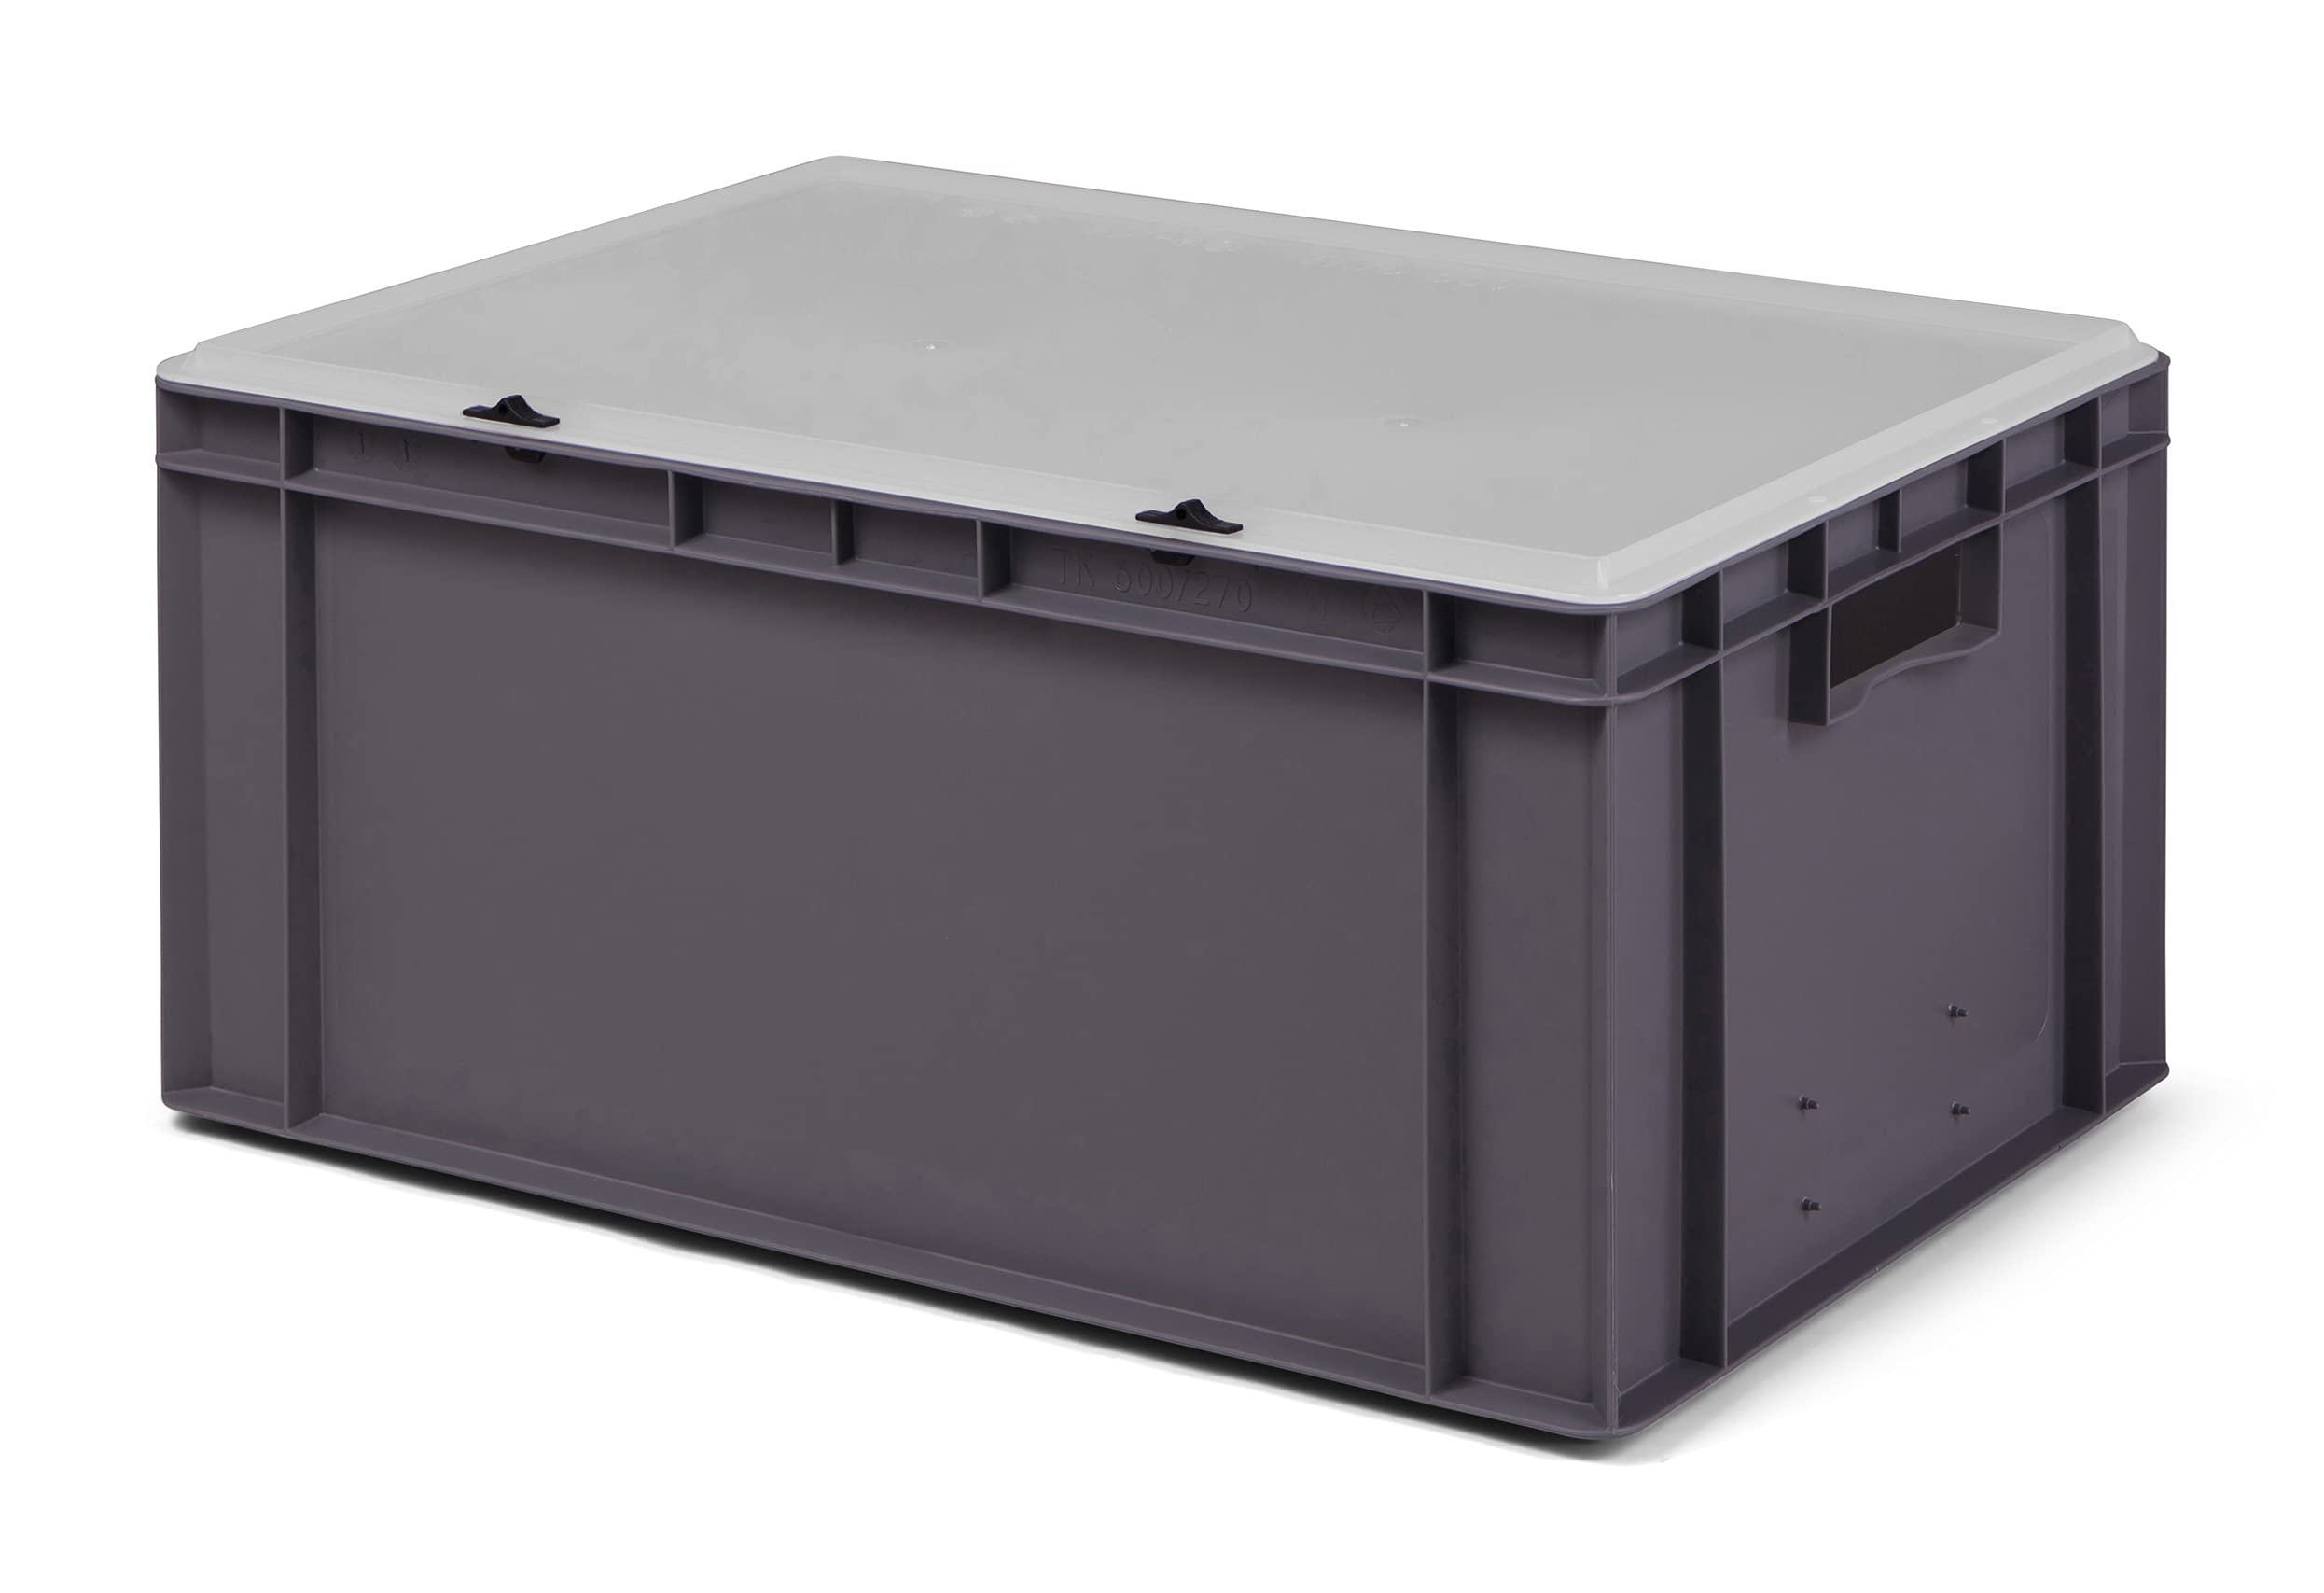 1a-TopStore Design Eurobox Stapelbox Lagerbehälter Kunststoffbox in 5 Farben und 16 Größen mit transparentem Deckel (matt) (grau, 60x40x28 cm)